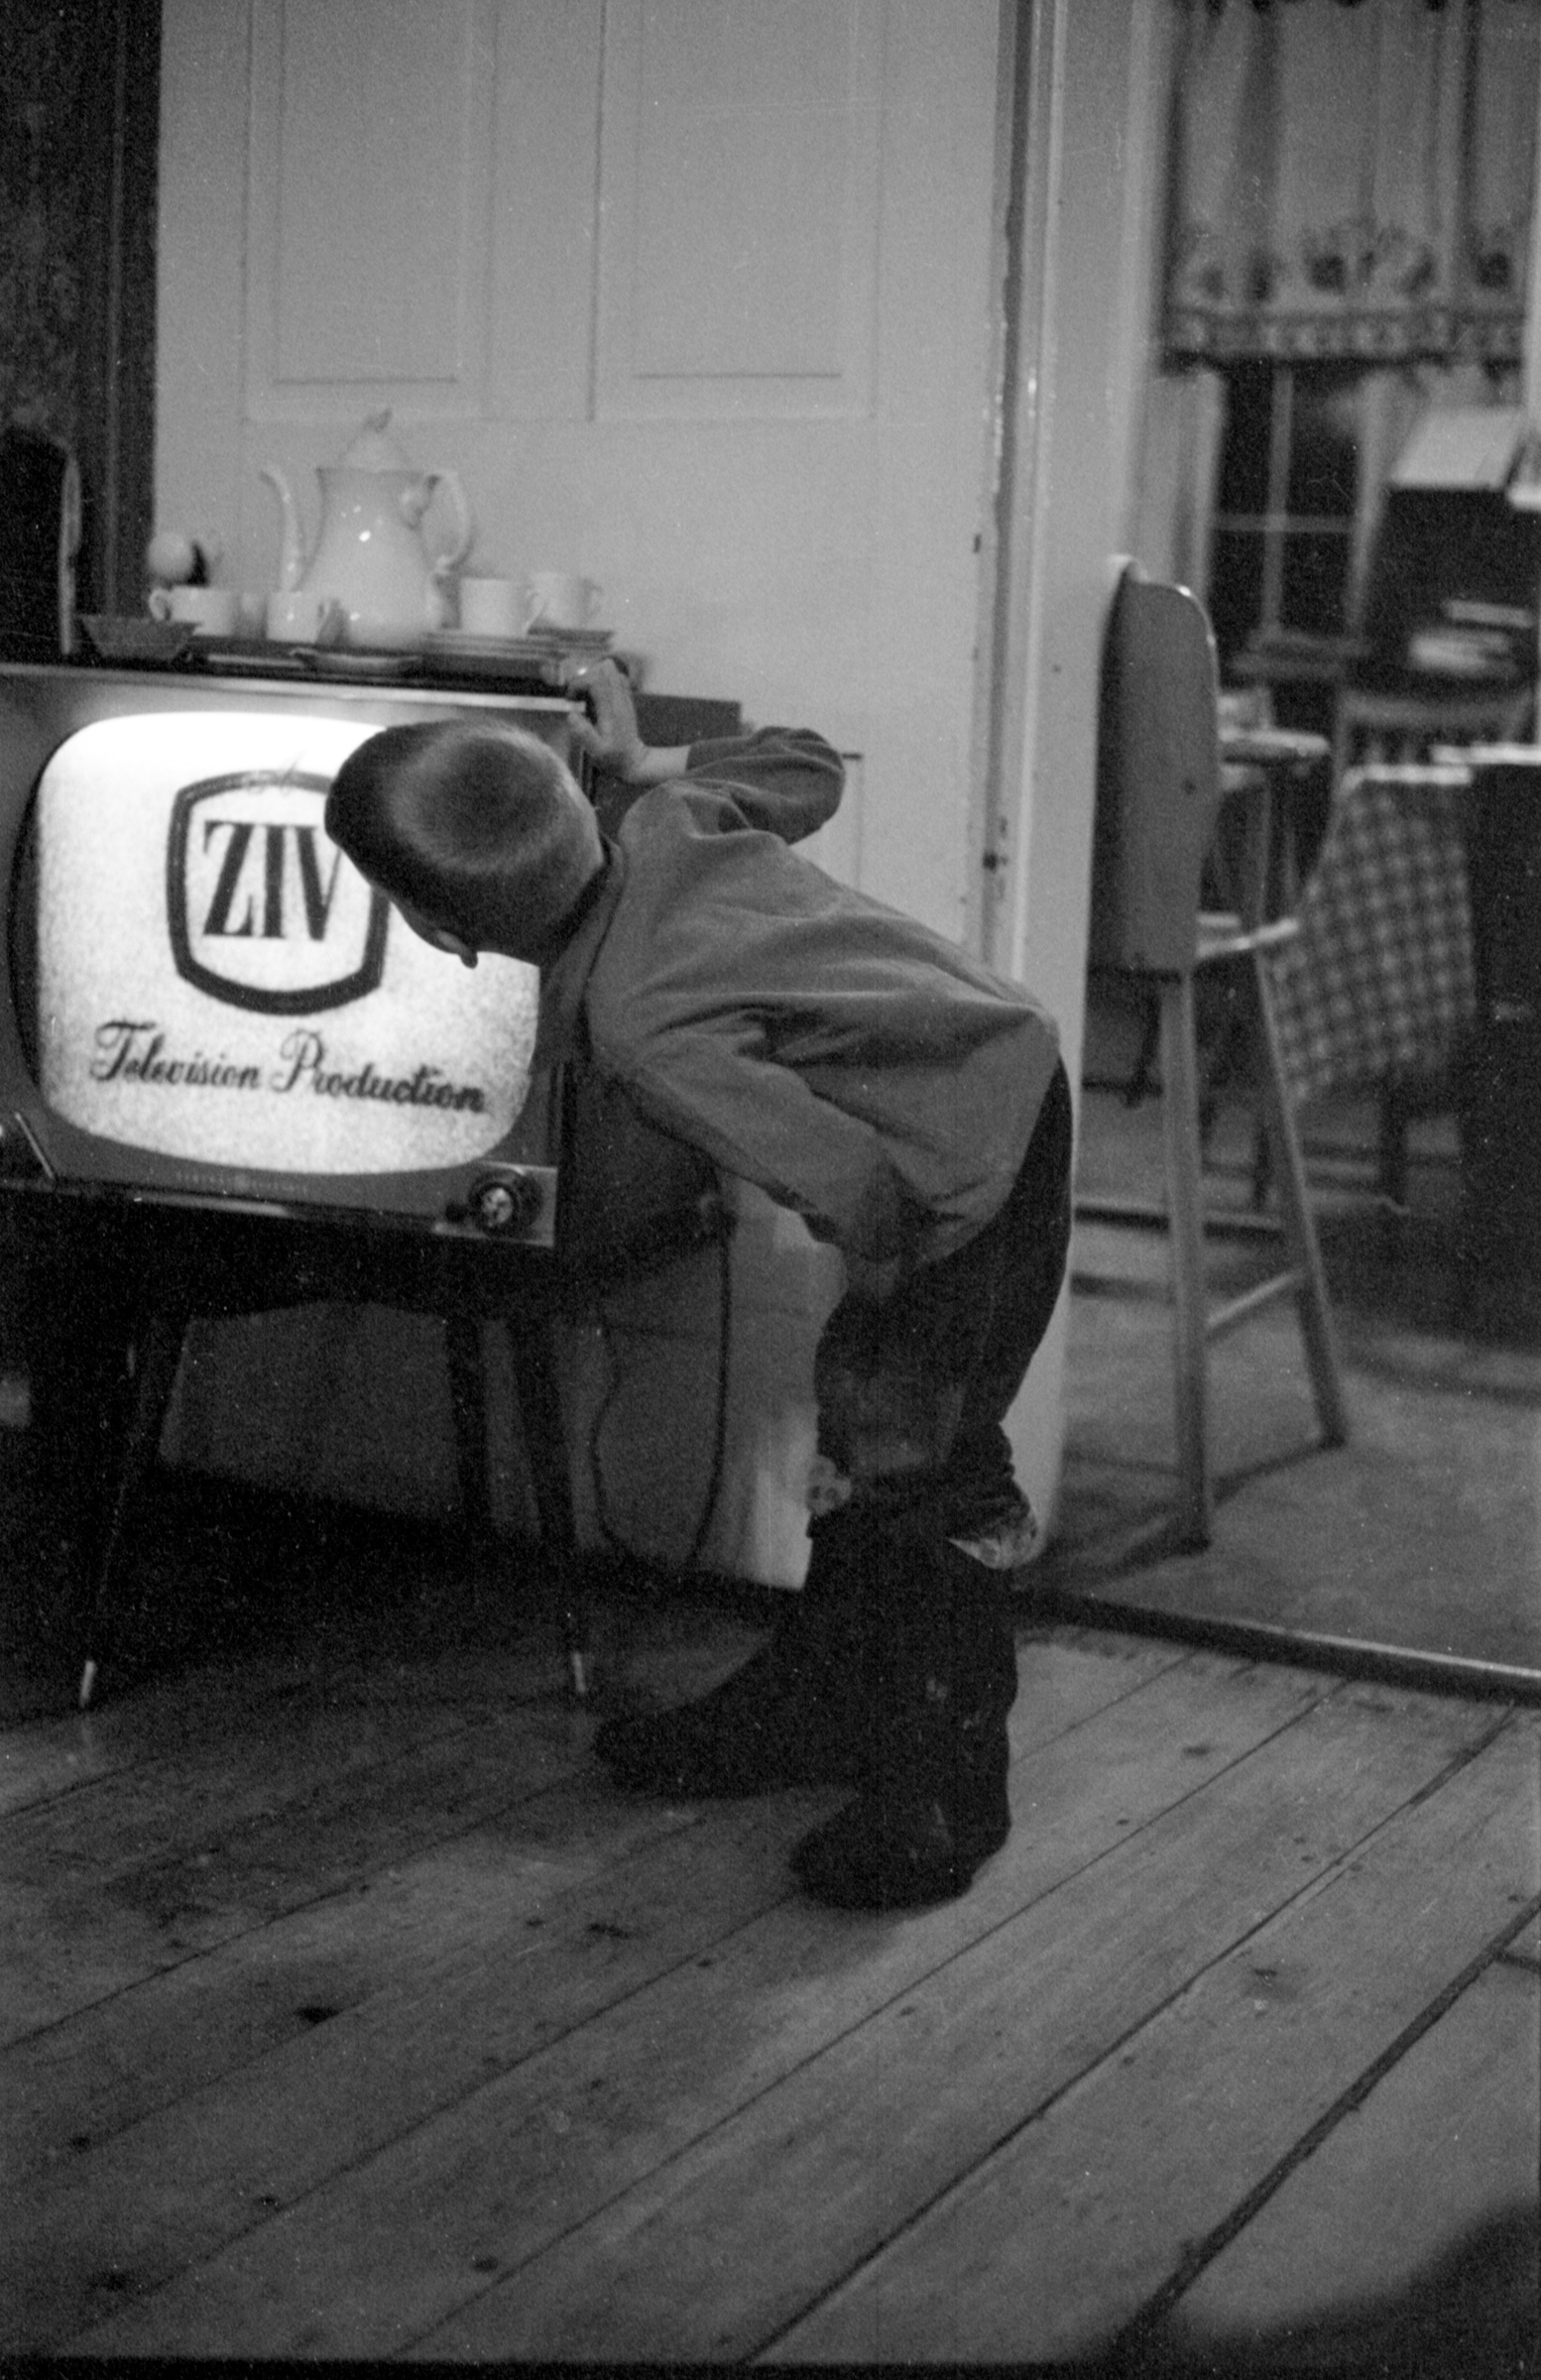 Joe-Watching-ZIV-TV